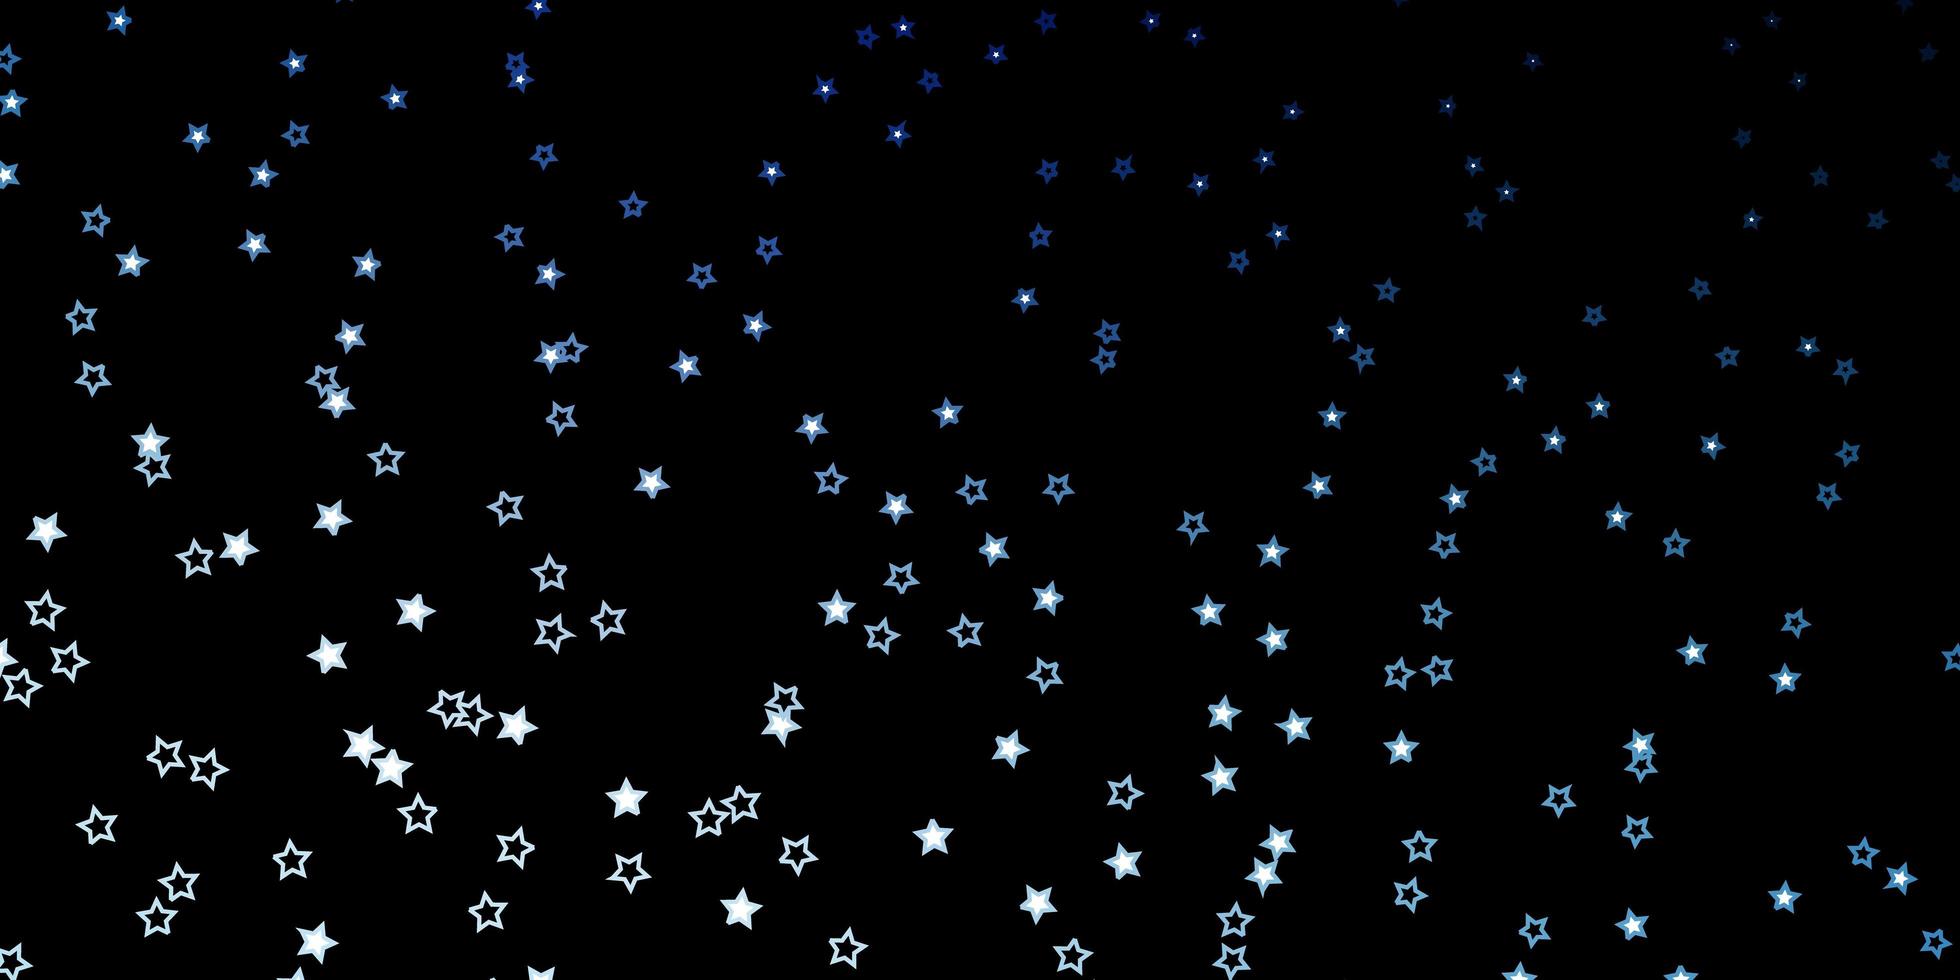 modello vettoriale blu scuro con stelle al neon.